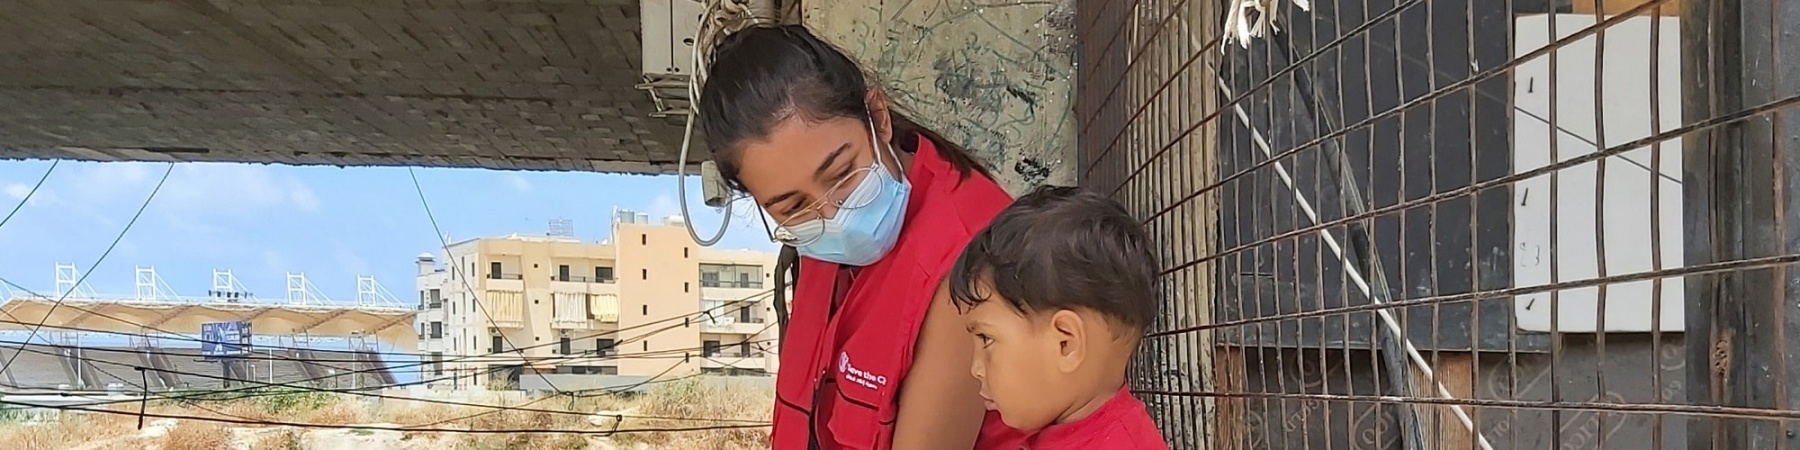 operatrice save the children con mascherina seduta su un muretto a fianco di un bimbo. Sullo sfondo varie presone che camminano. 